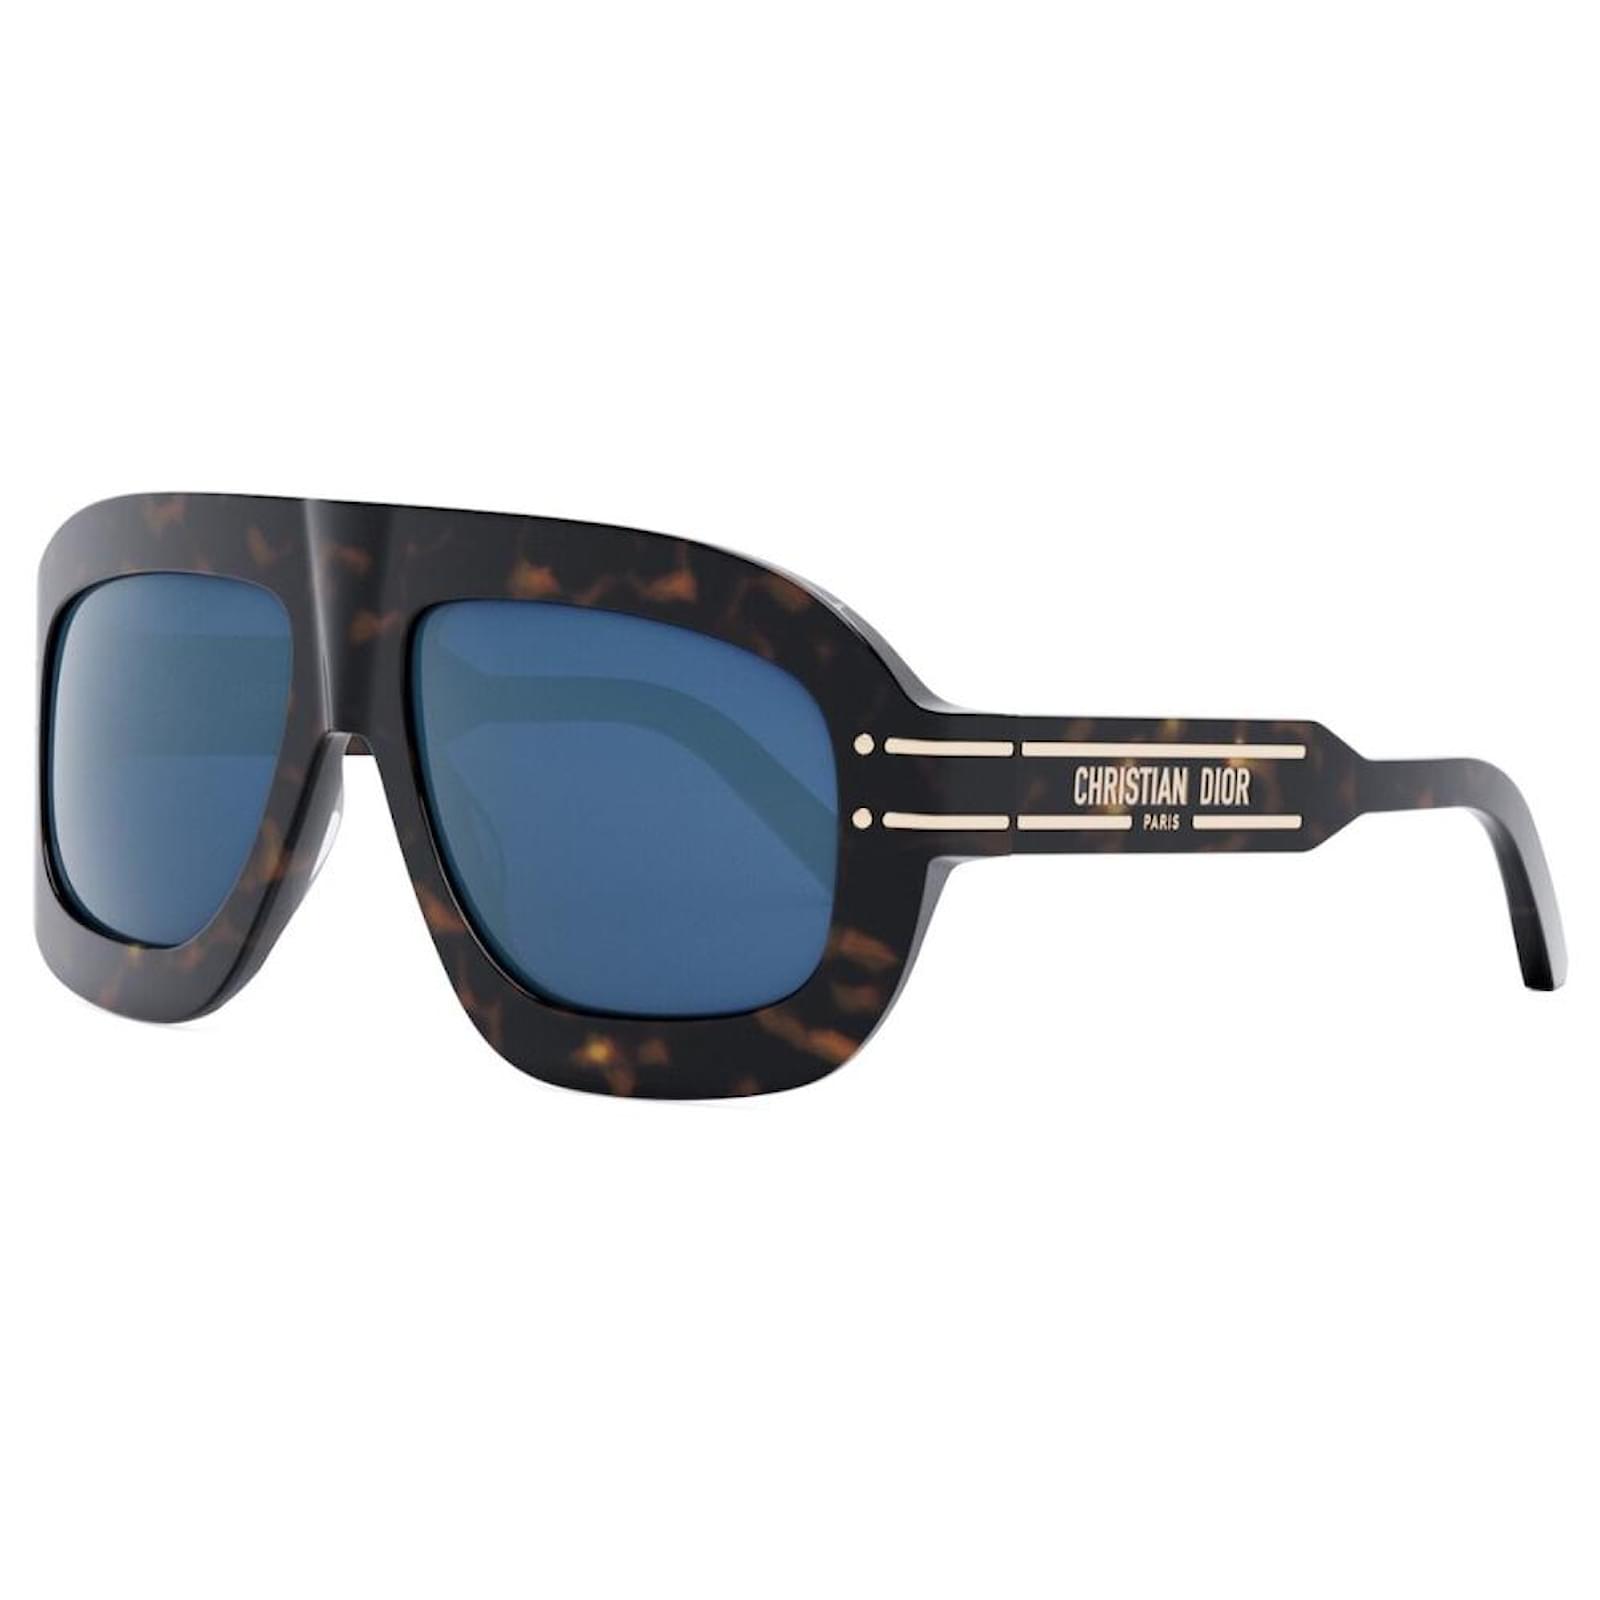 DiorSignature Metal Aviator Sunglasses